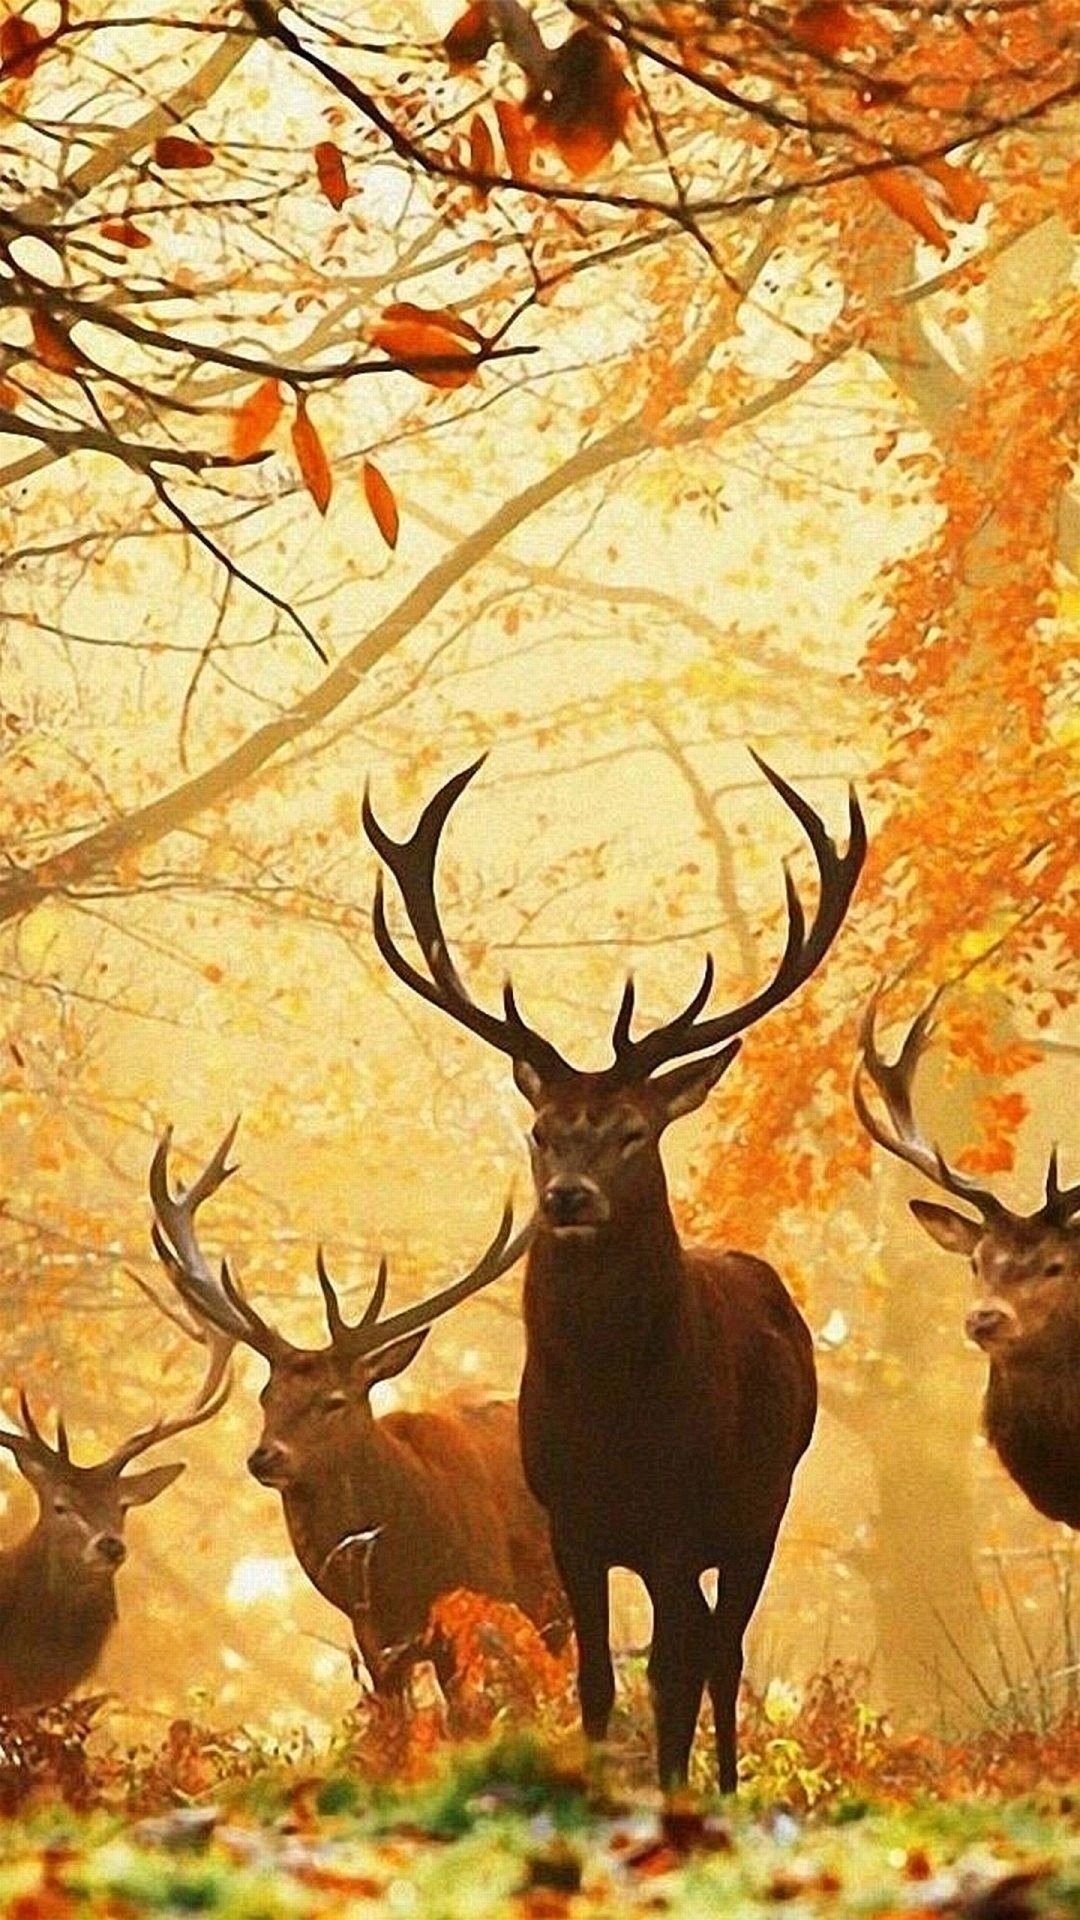 1080x1920 Deer In The Forest Wallpaper Deers Animals Wallpapers) – Art Wallpapers